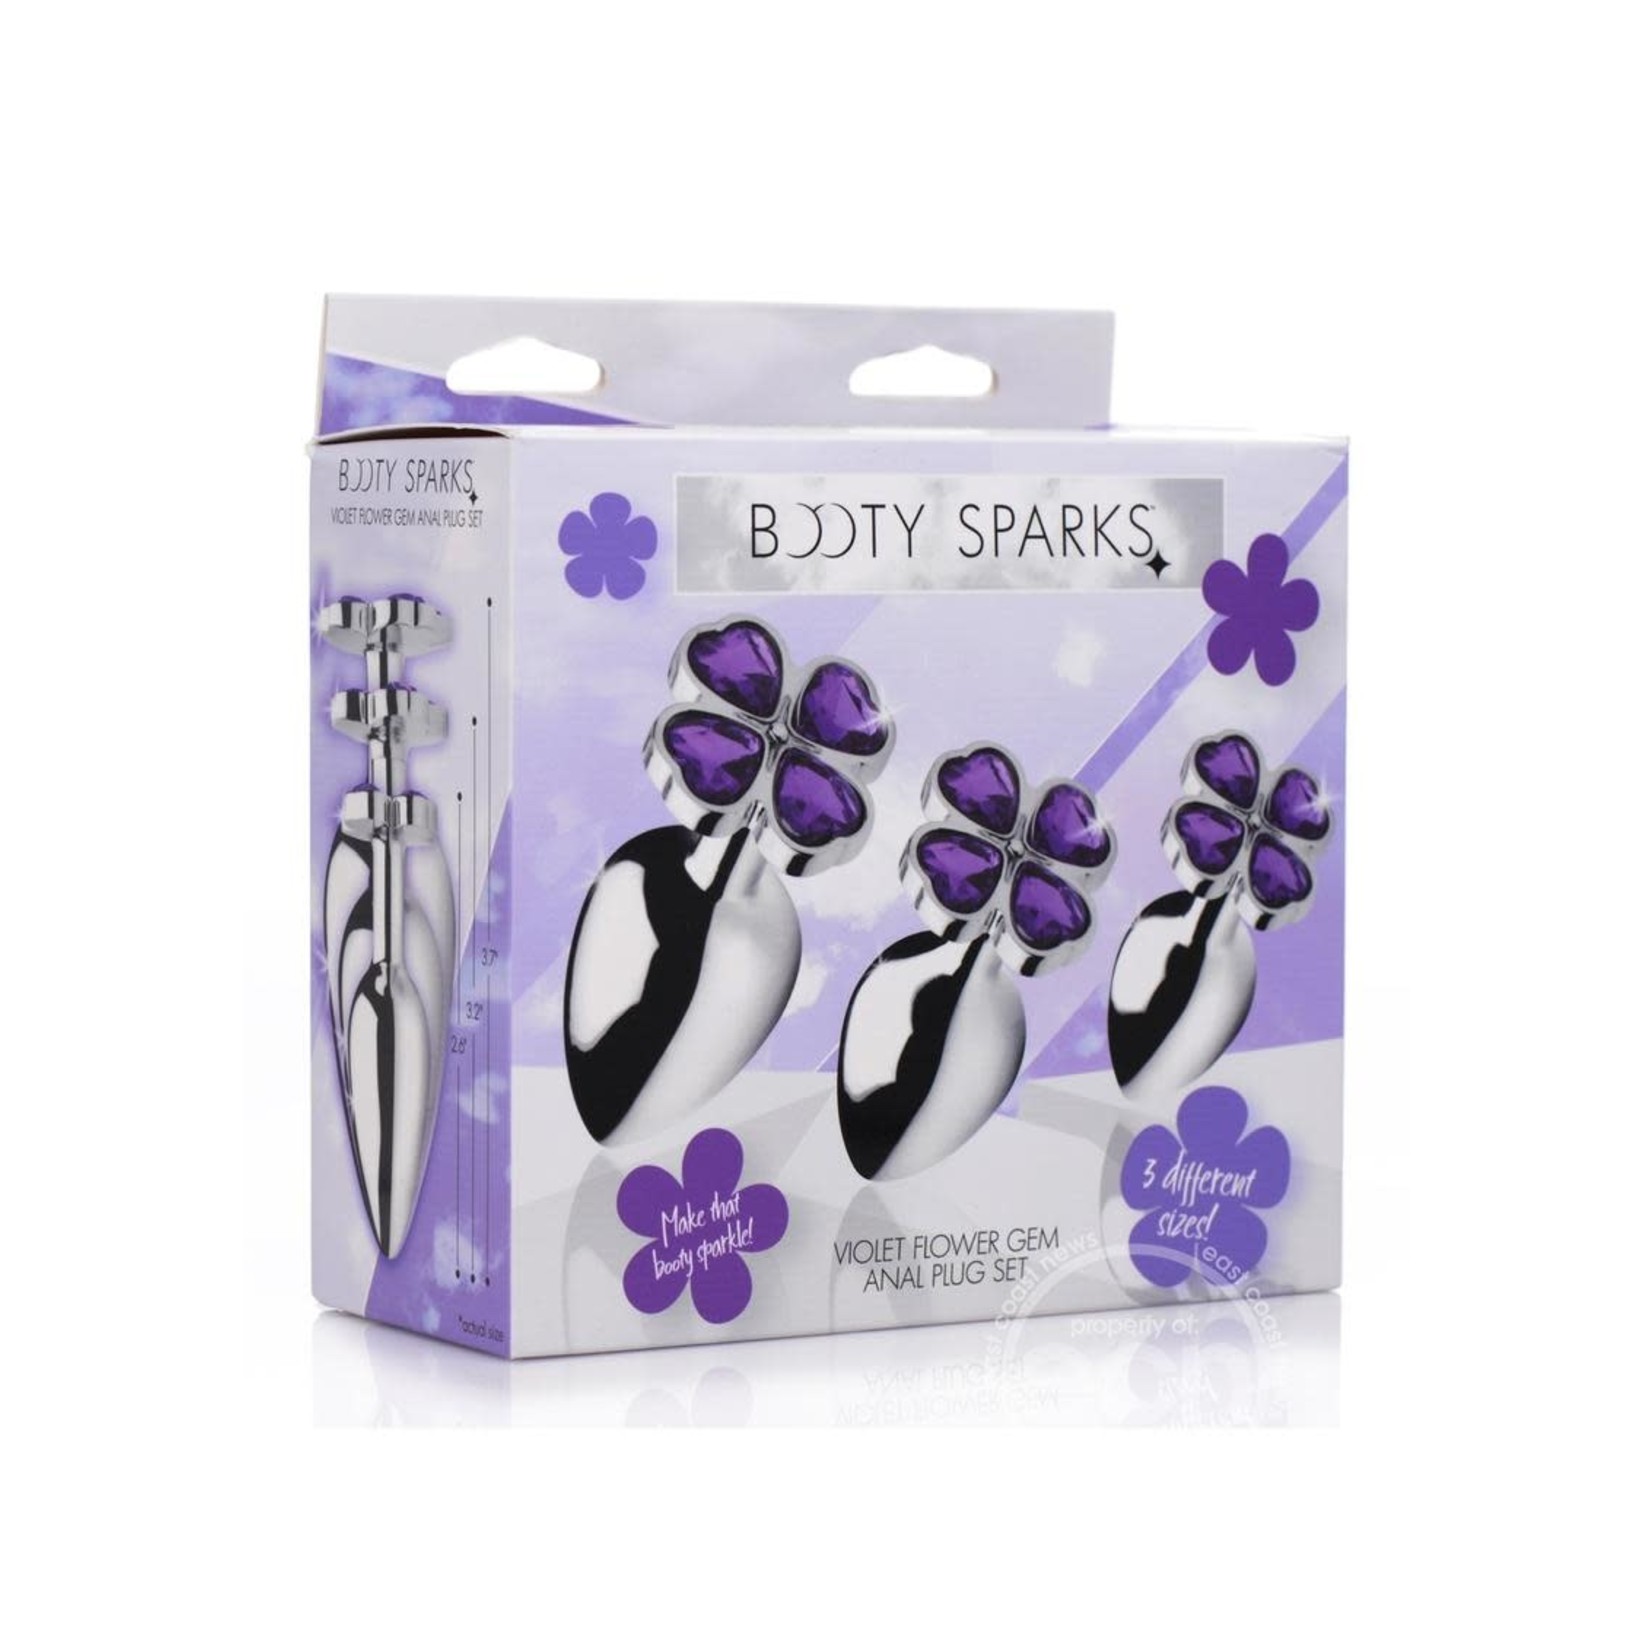 Booty Sparks Violet Flower Gem Anal Plug Set - Silver